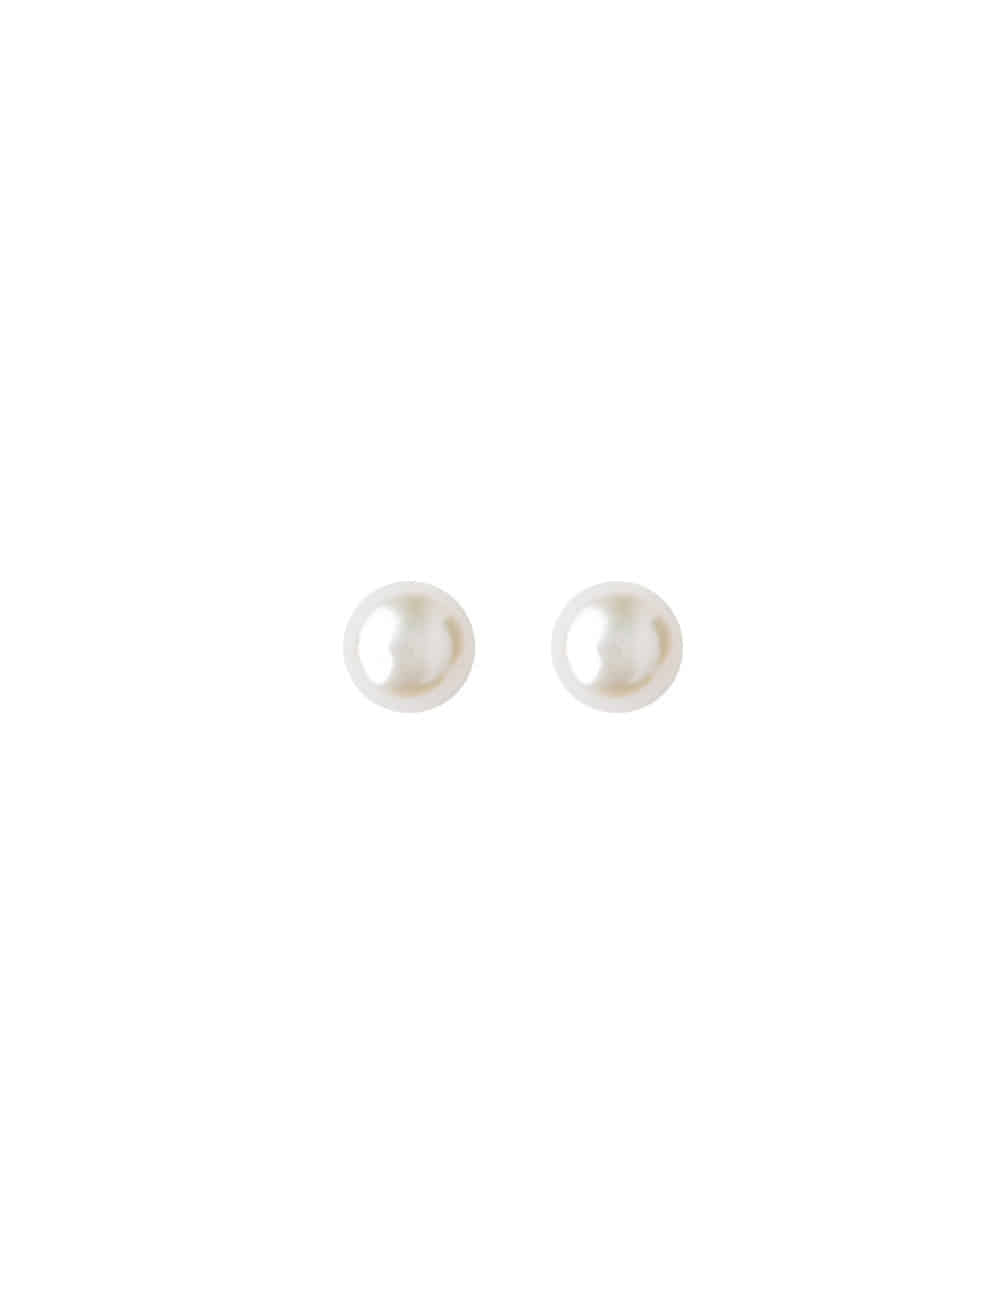 Refined Freshwater Pearl Stud Earrings (Sterling Silver)